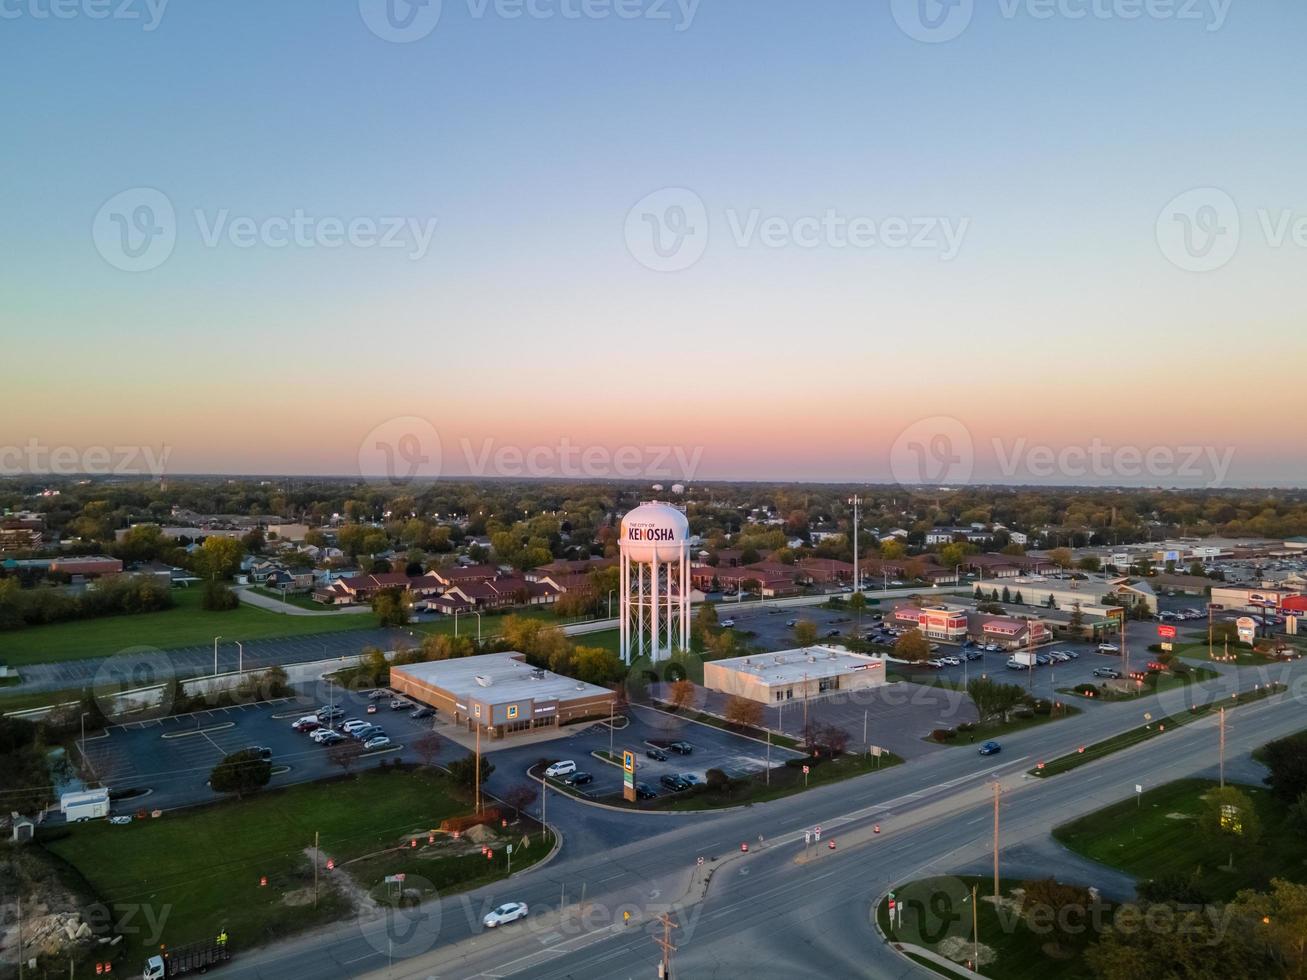 vista aérea da área urbana com torre de água proeminente na ampla rodovia da cidade grande área industrial com estacionamento Casas unifamiliares com o sol começando a se pôr foto